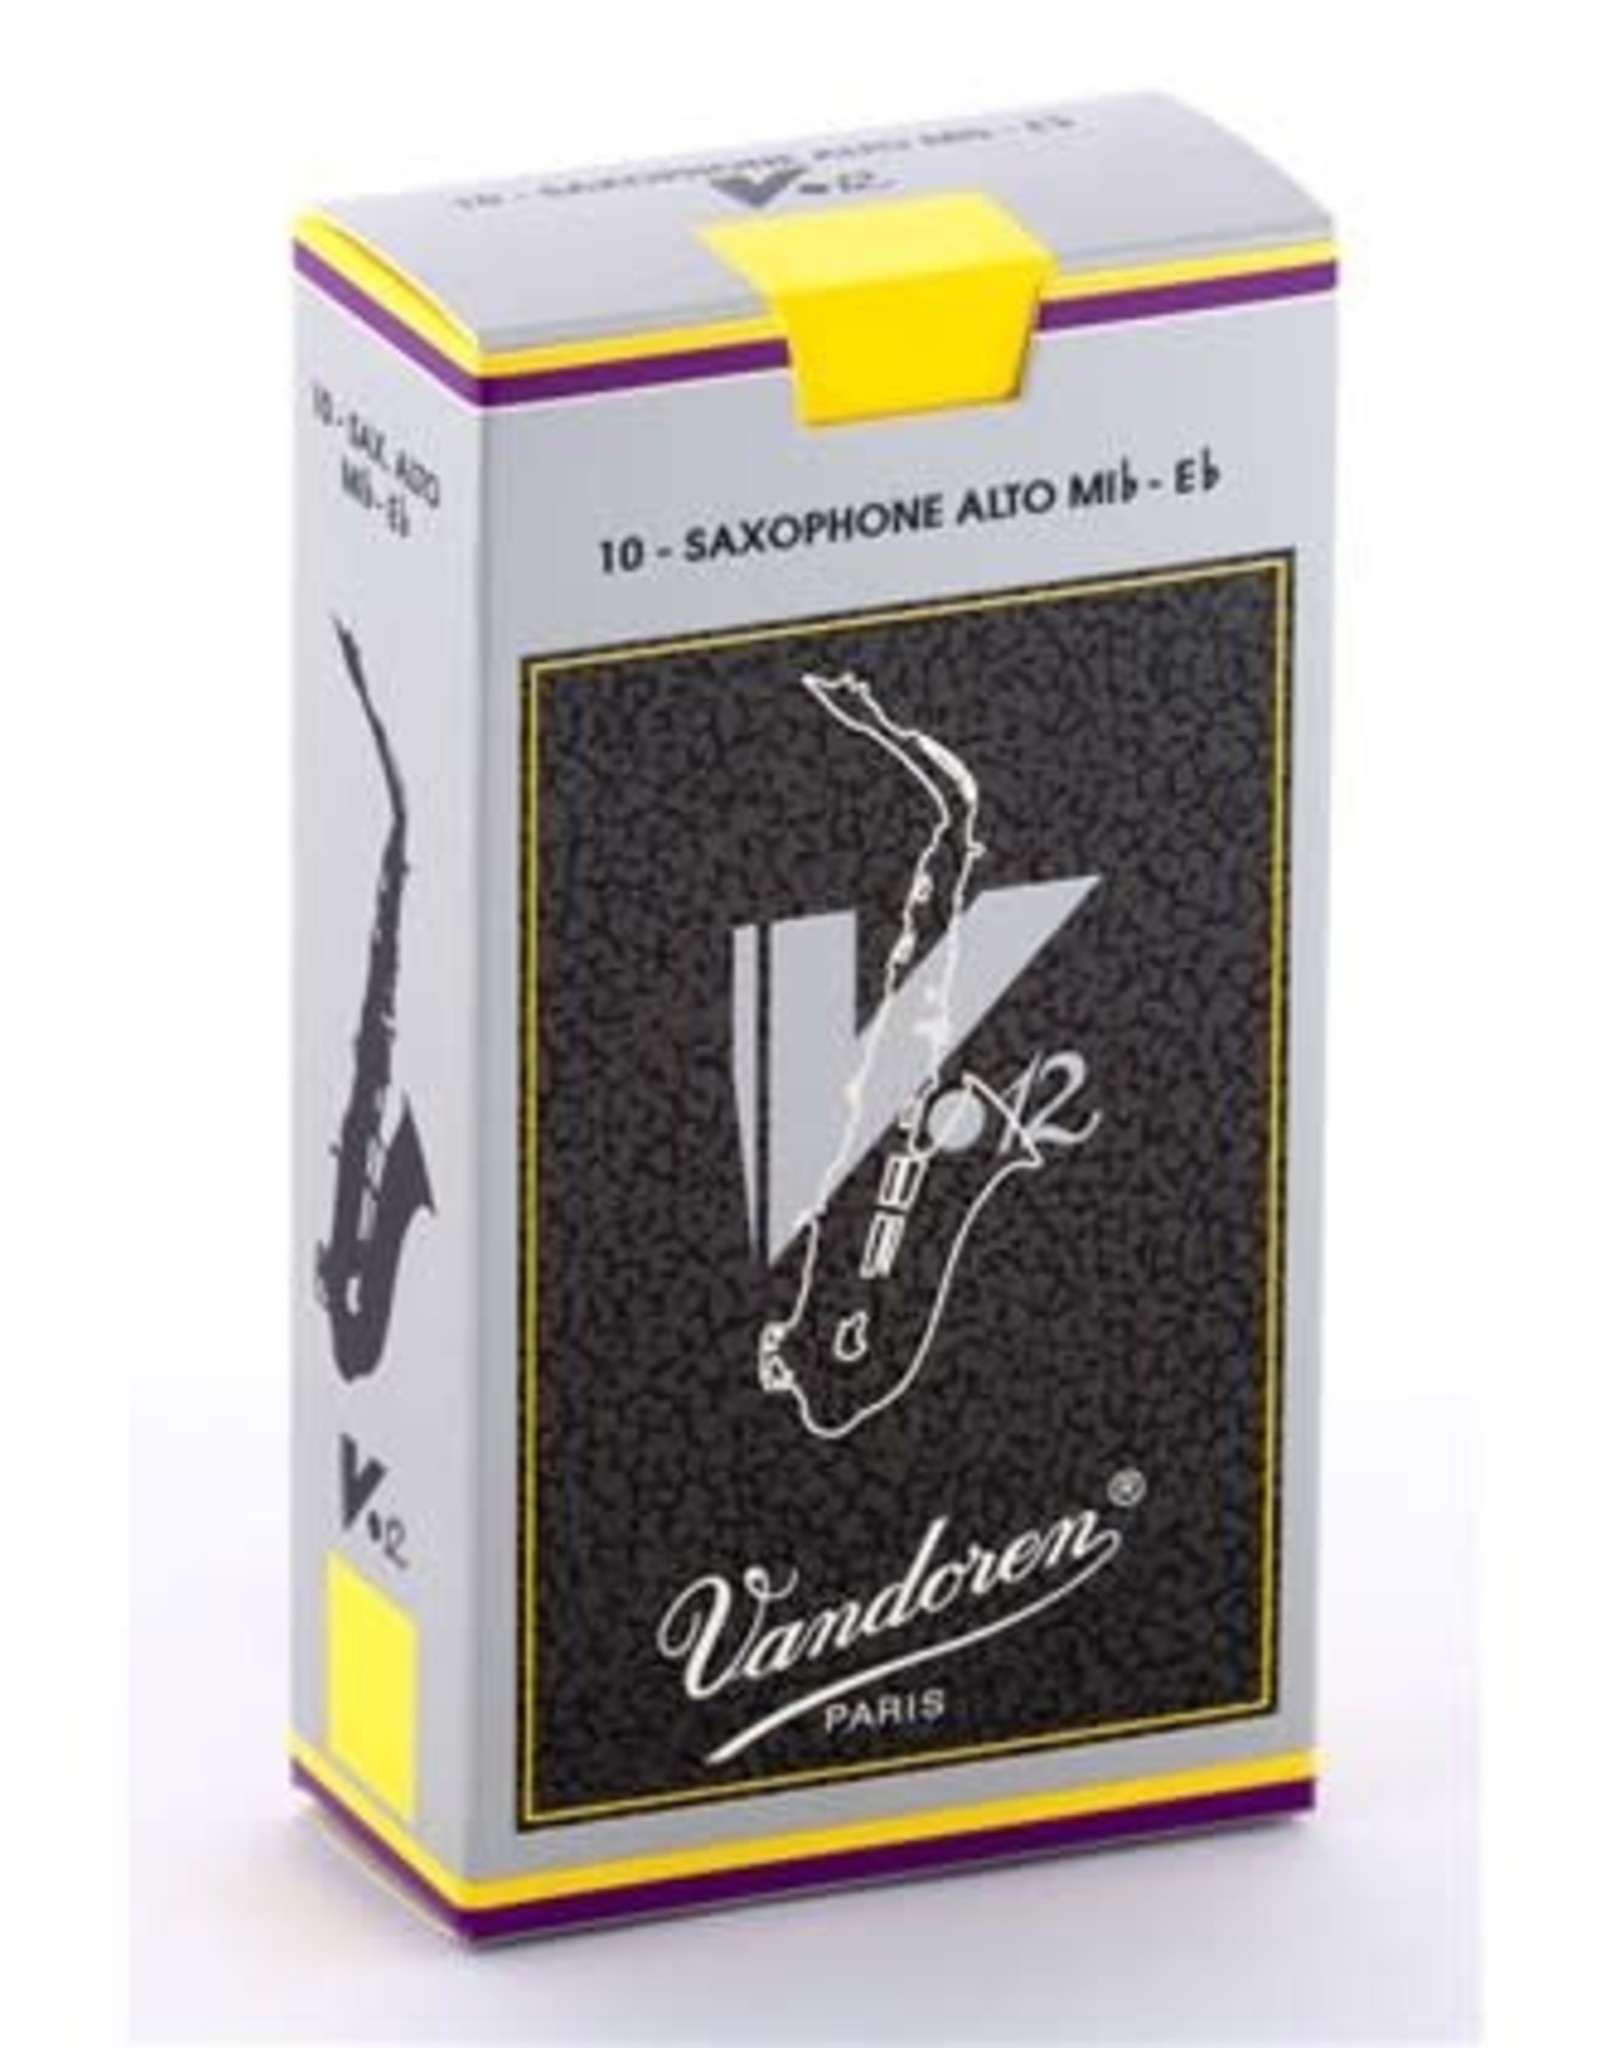 Vandoren Vandoren V.12 SR6125 Saxophone Alto Mib-Eb 2.5 Pkg of 10